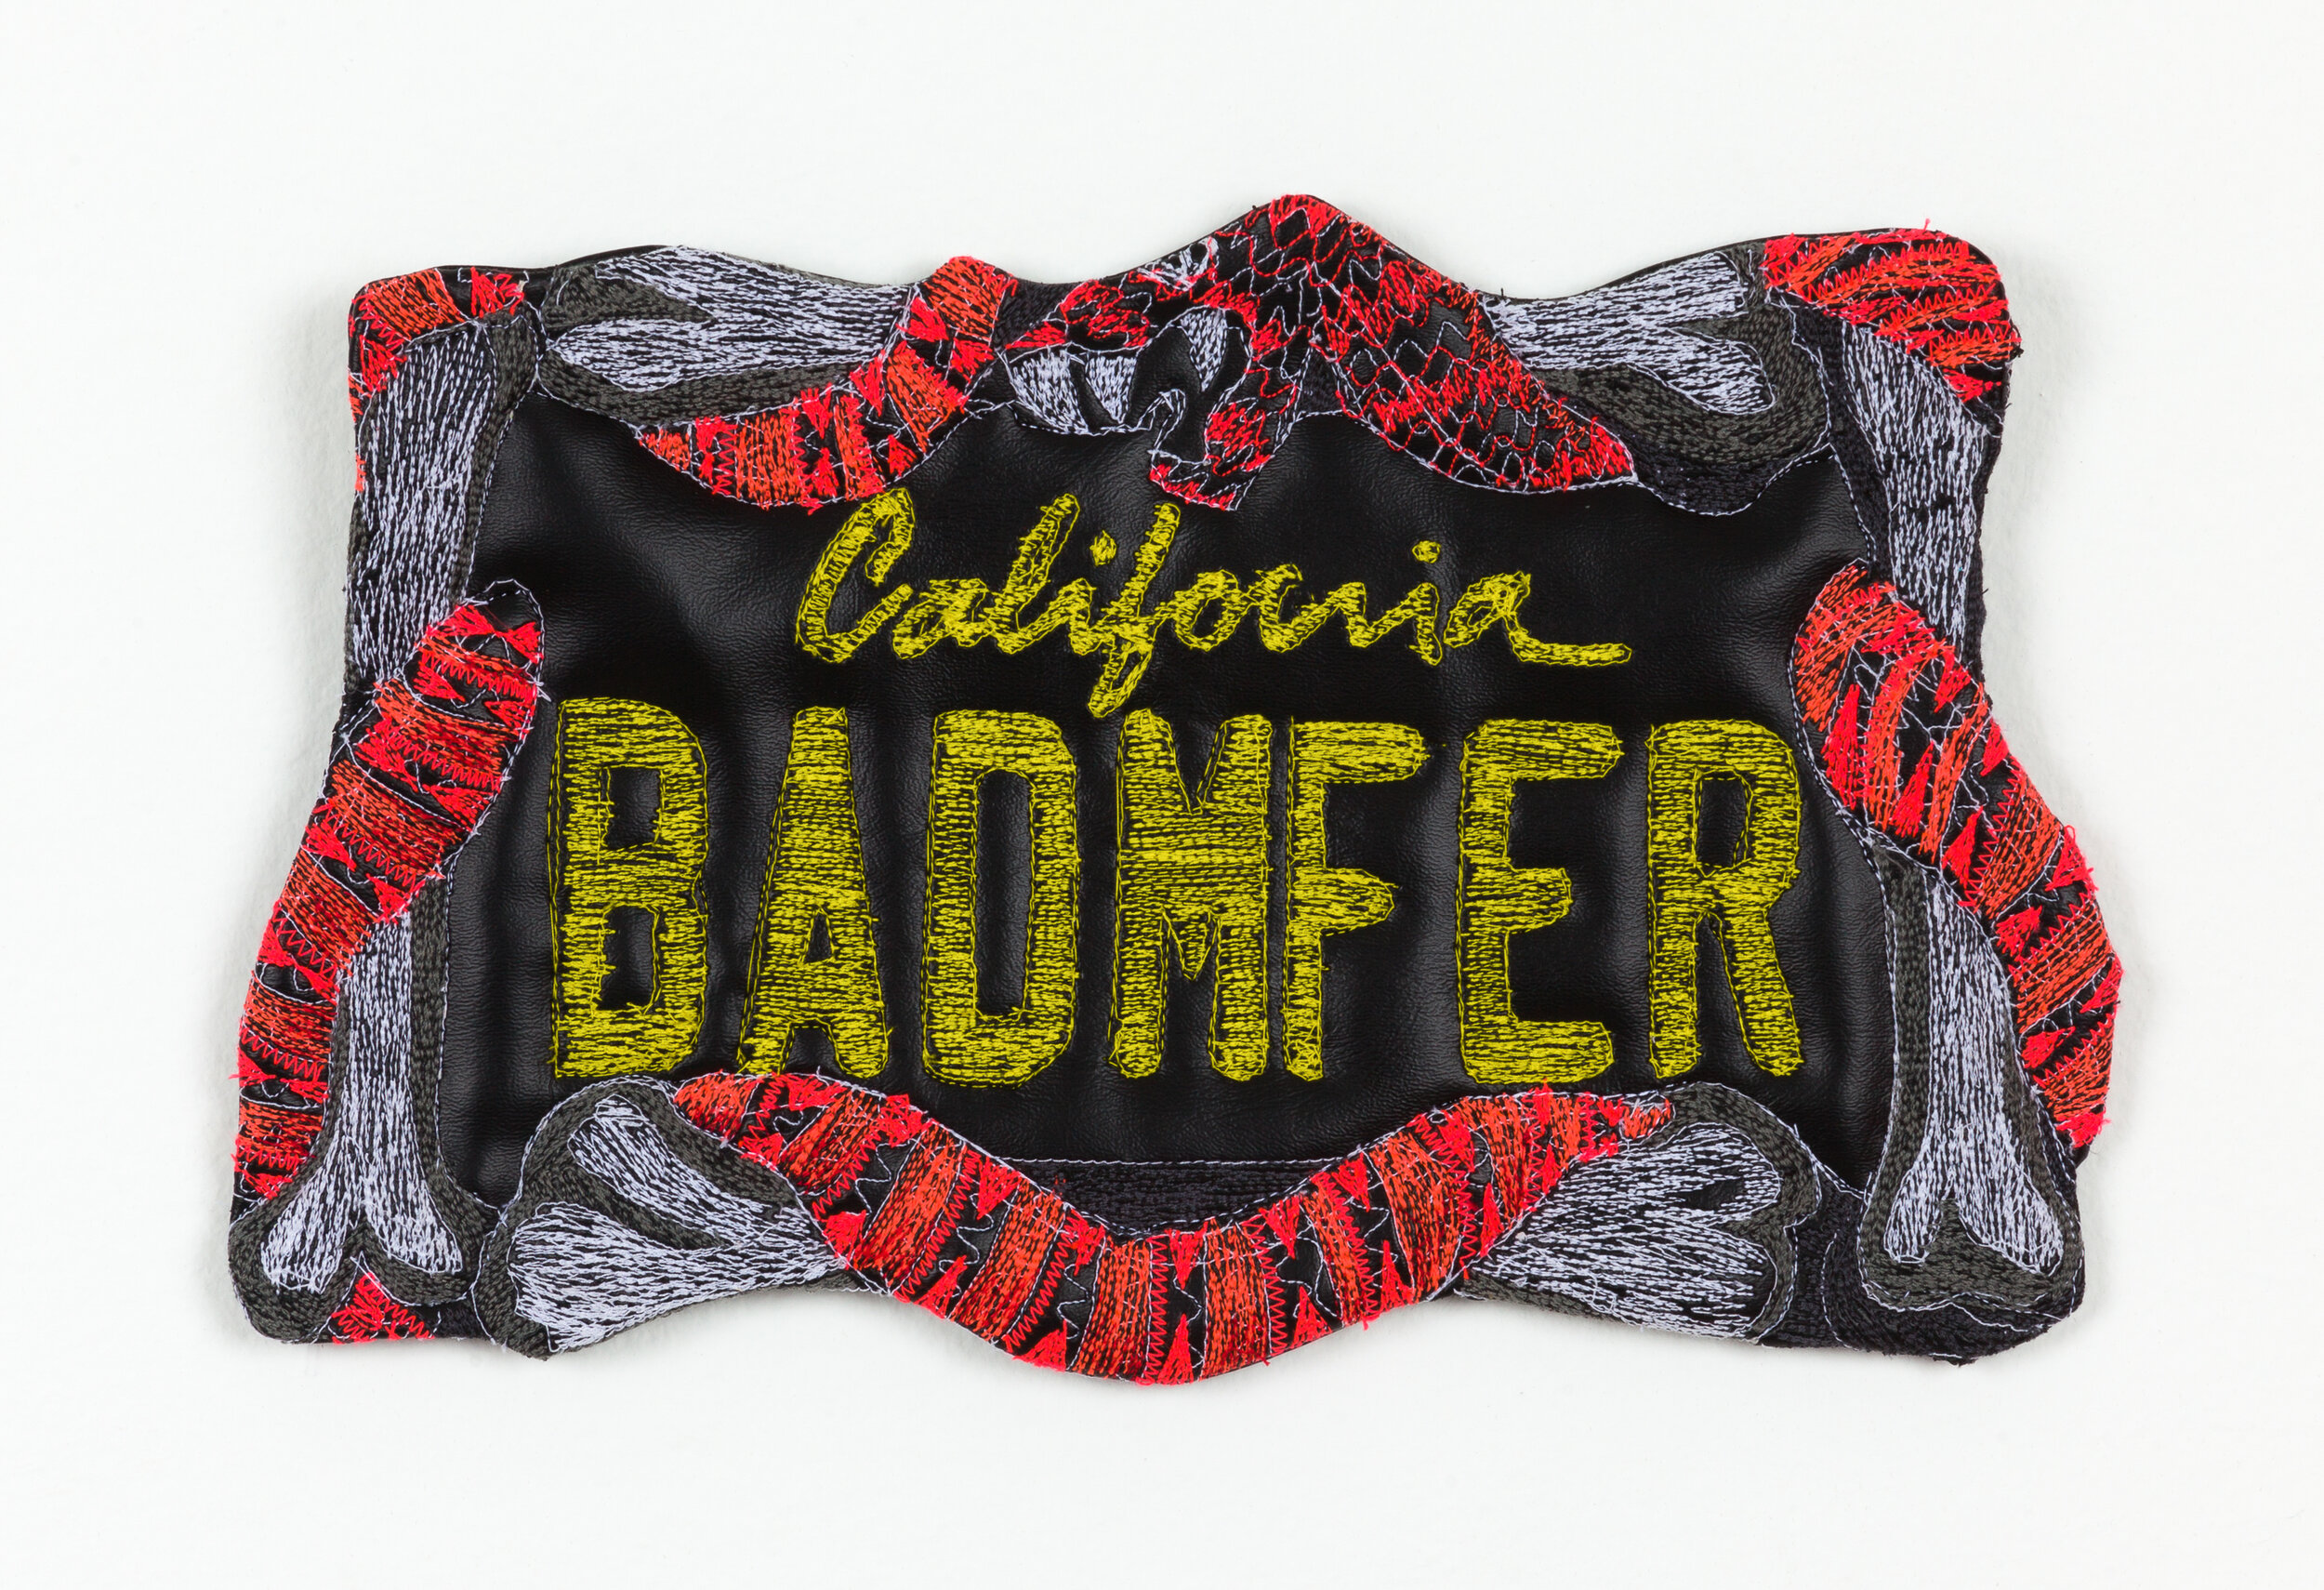  BADMFER, 2020  faux leather, thread, polyurethane foam, hardware  8x13 inches   